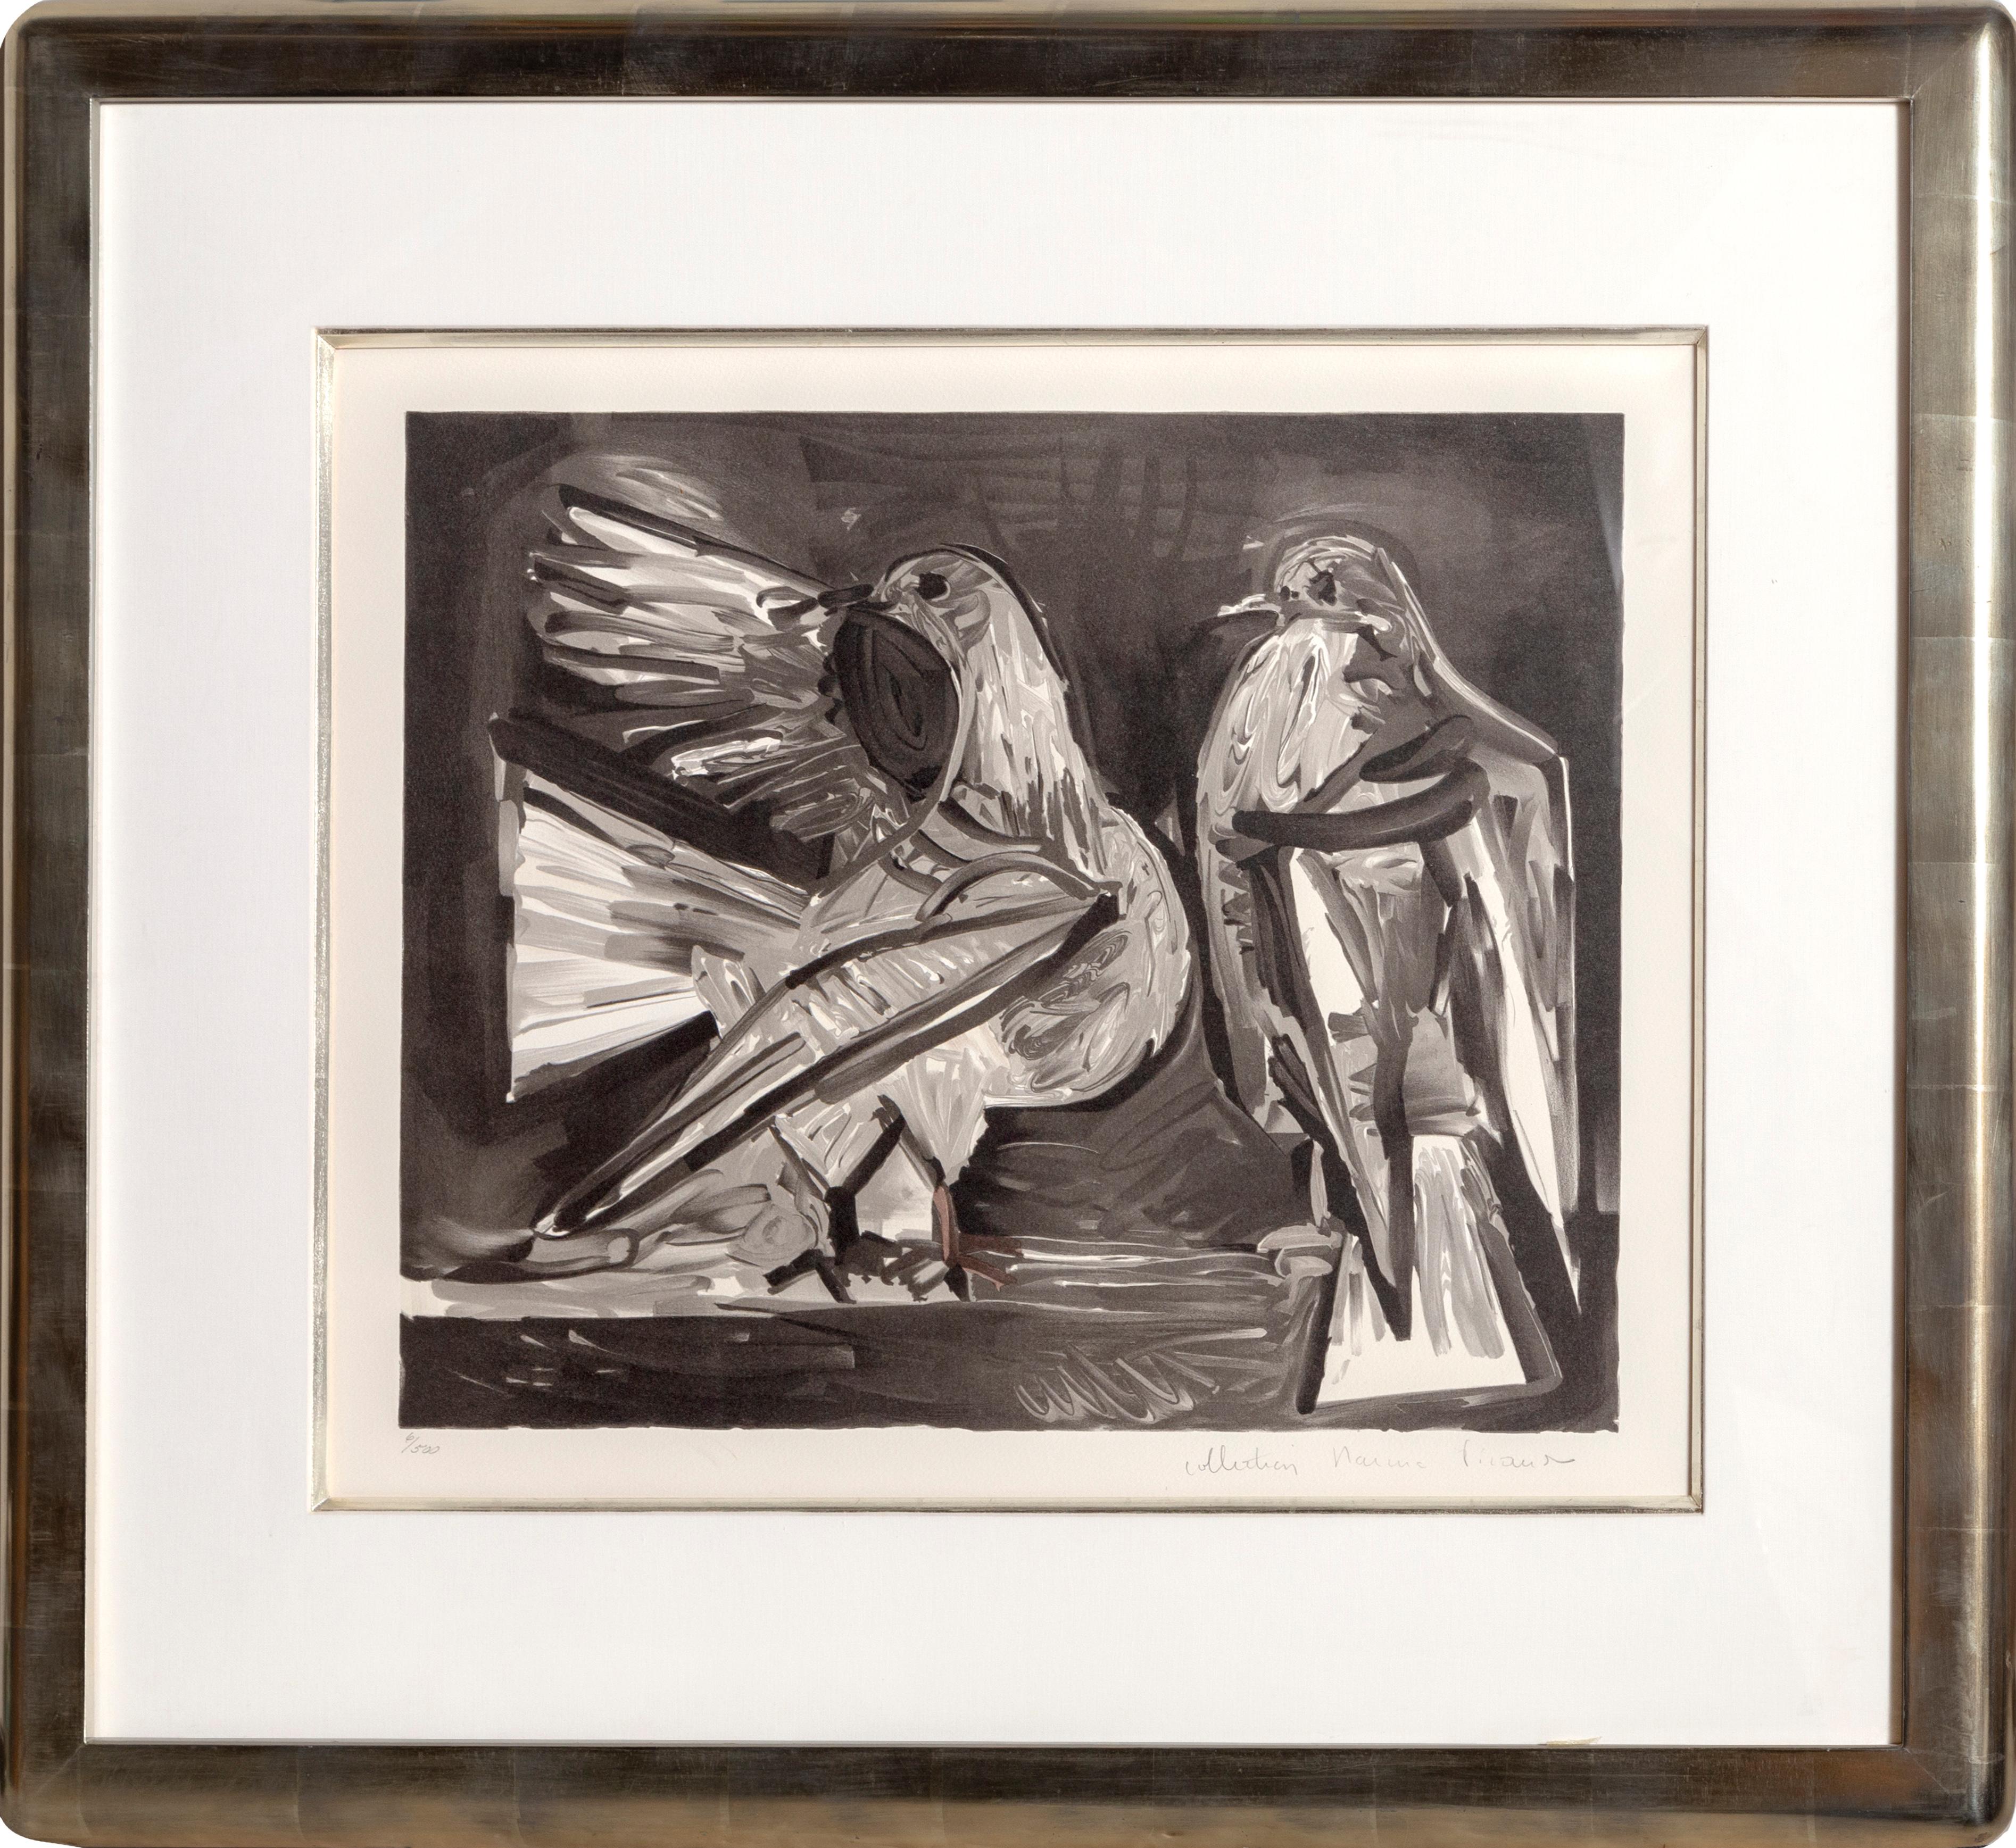 Une lithographie de la Collection S de Marina Picasso d'après le tableau de Pablo Picasso "Deux Pigeons".  La peinture originale a été achevée en 1960. Dans les années 1970, après la mort de Picasso, Marina Picasso, sa petite-fille, a autorisé la